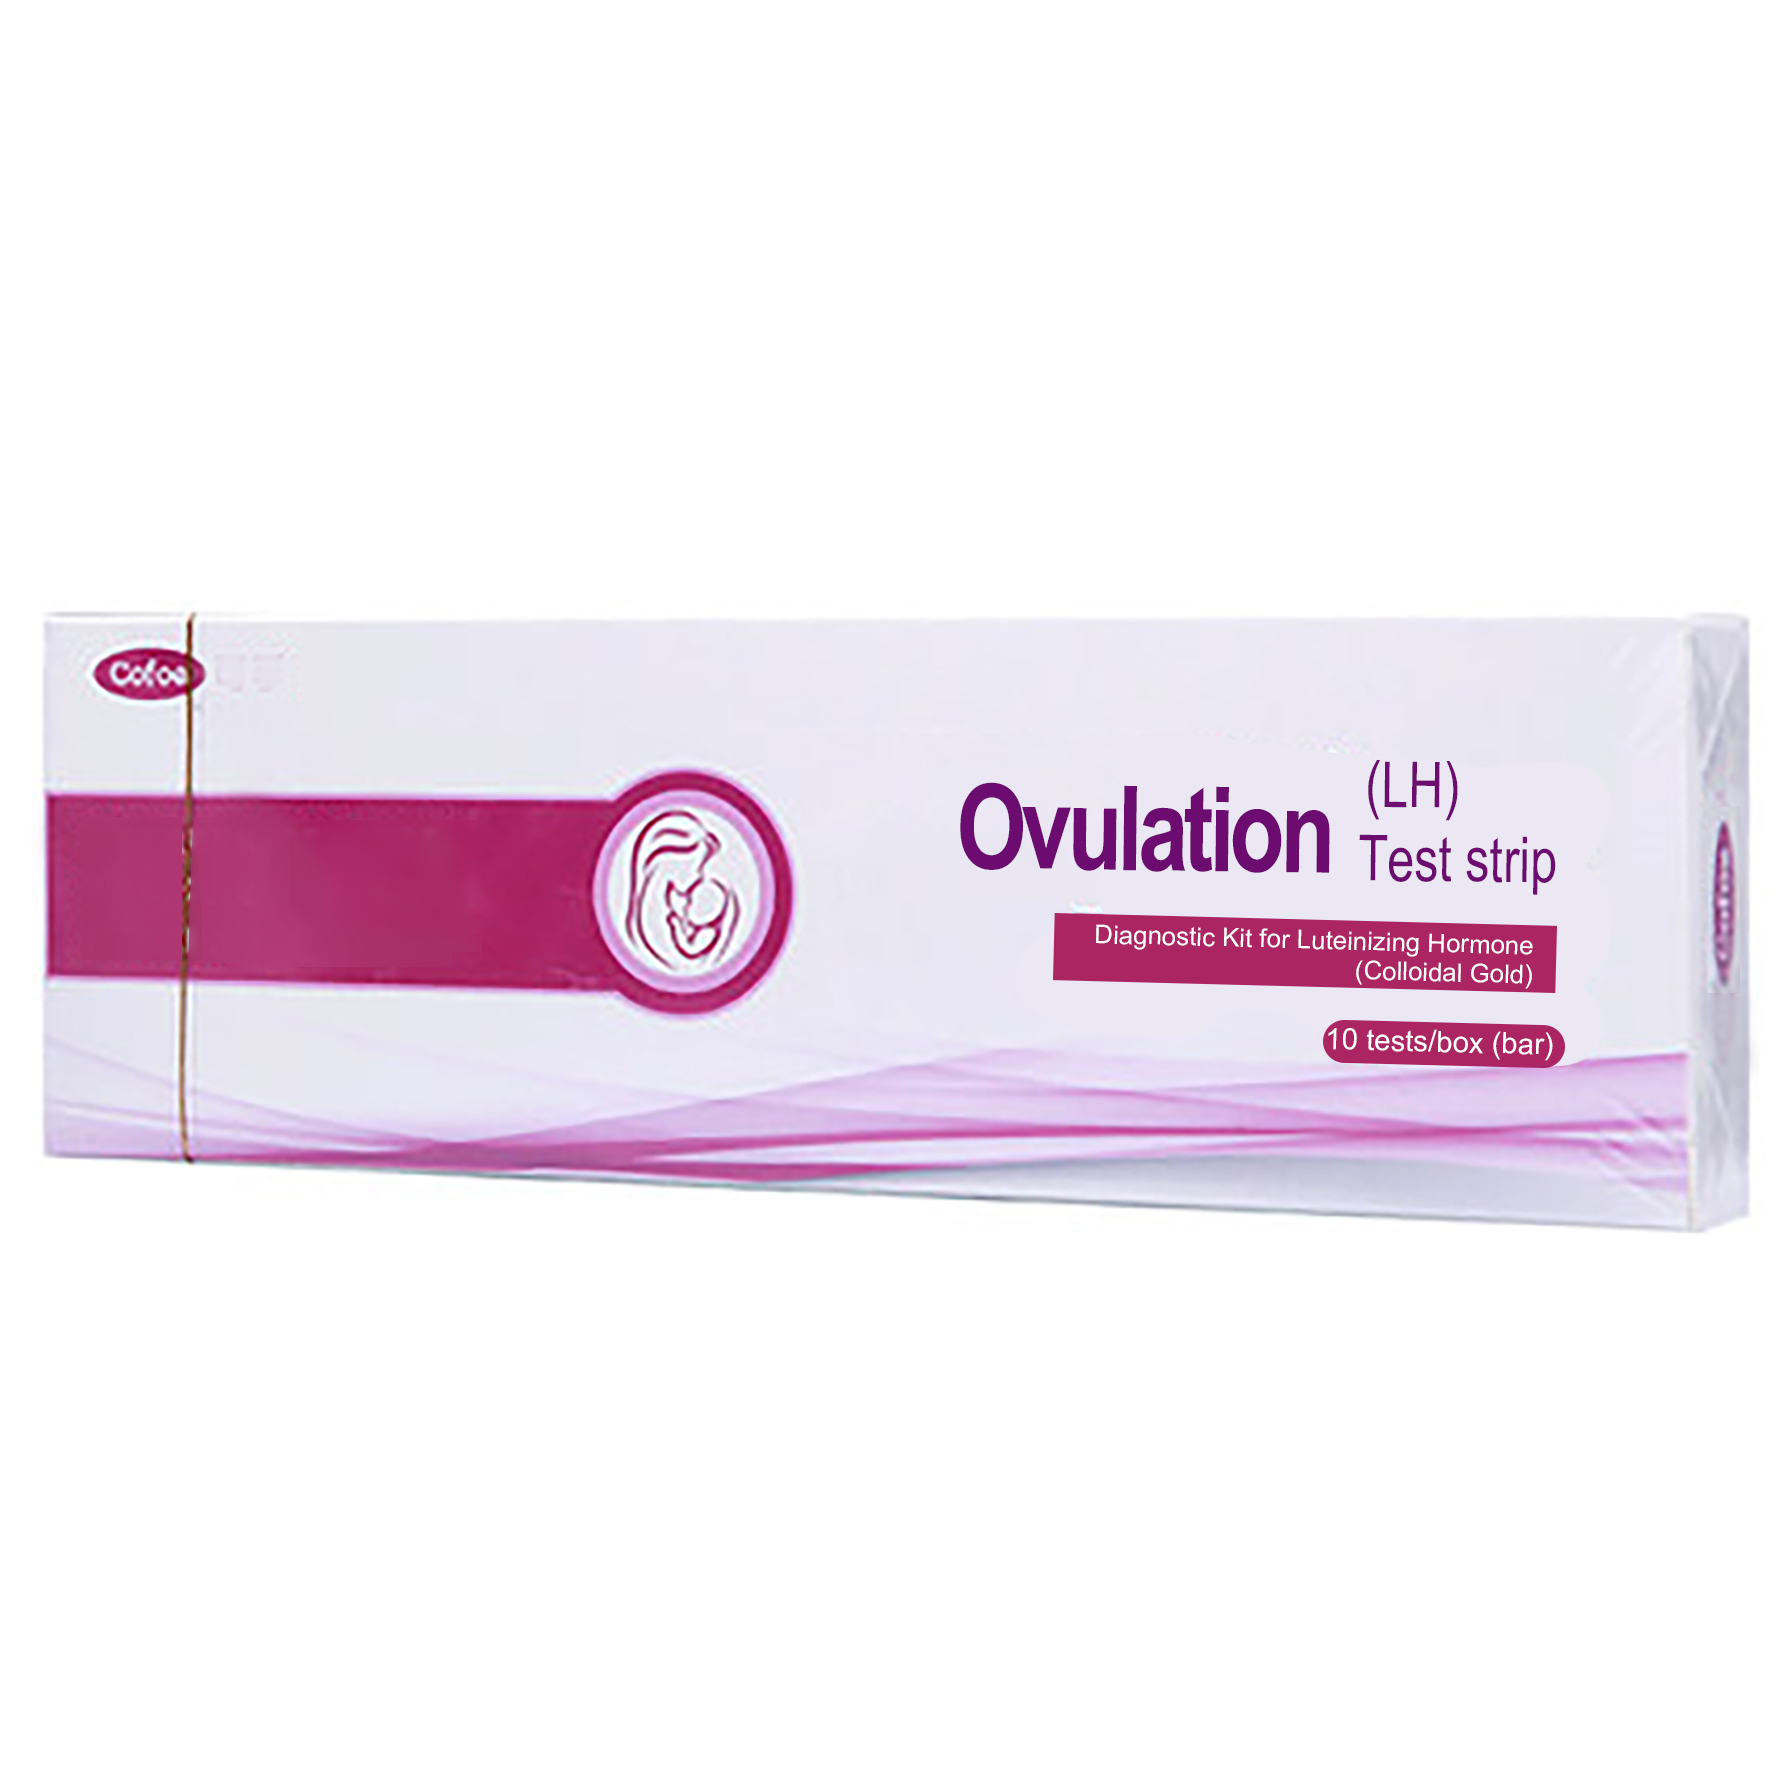 Tiras de teste de ovulação LH de gravidez HCG para casa